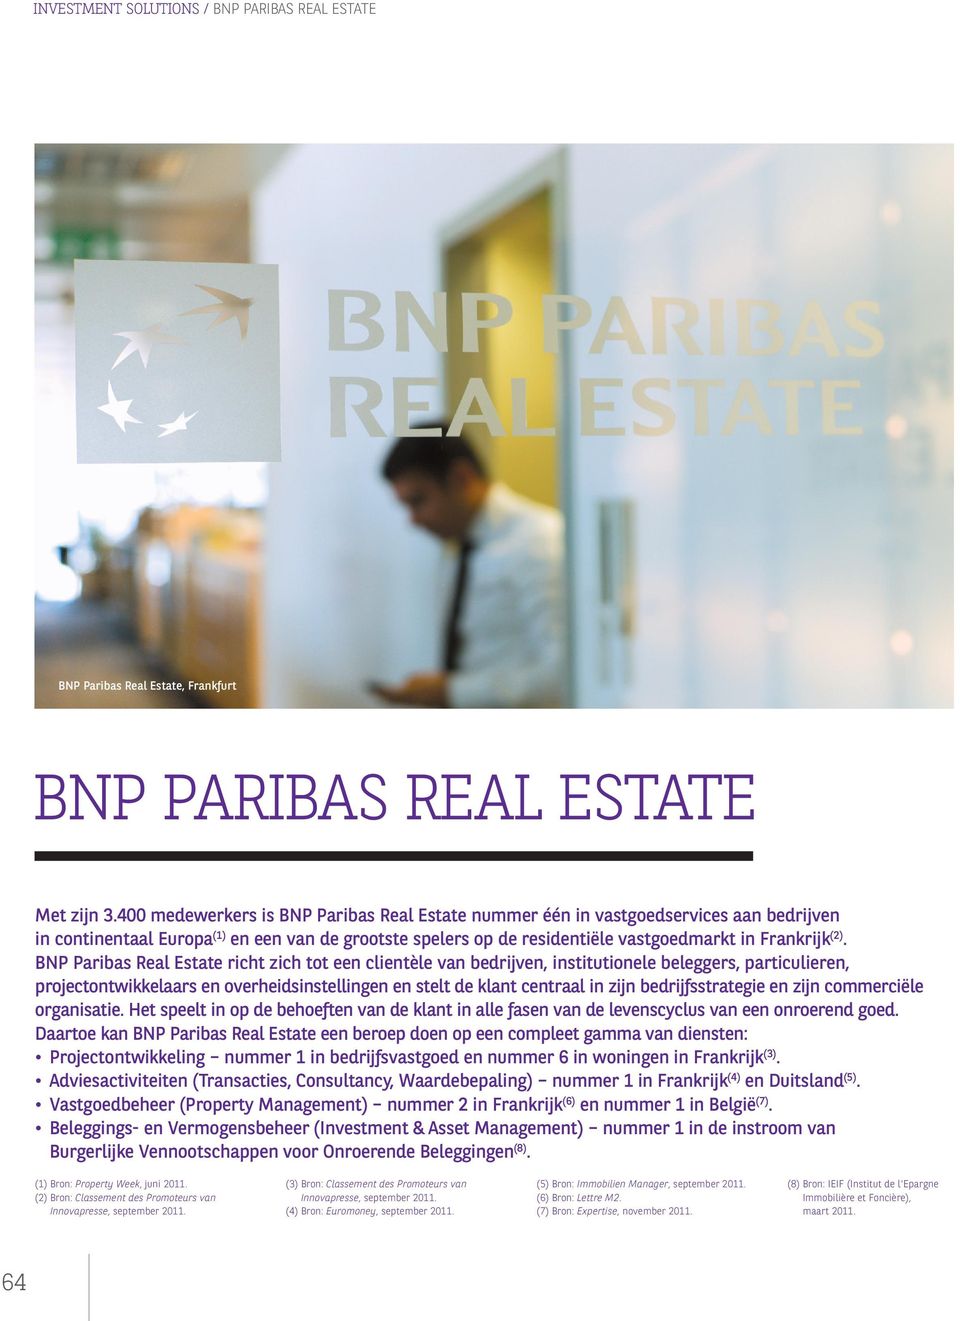 BNP Paribas Real Estate richt zich tot een clientèle van bedrijven, institutionele beleggers, particulieren, projectontwikkelaars en overheidsinstellingen en stelt de klant centraal in zijn